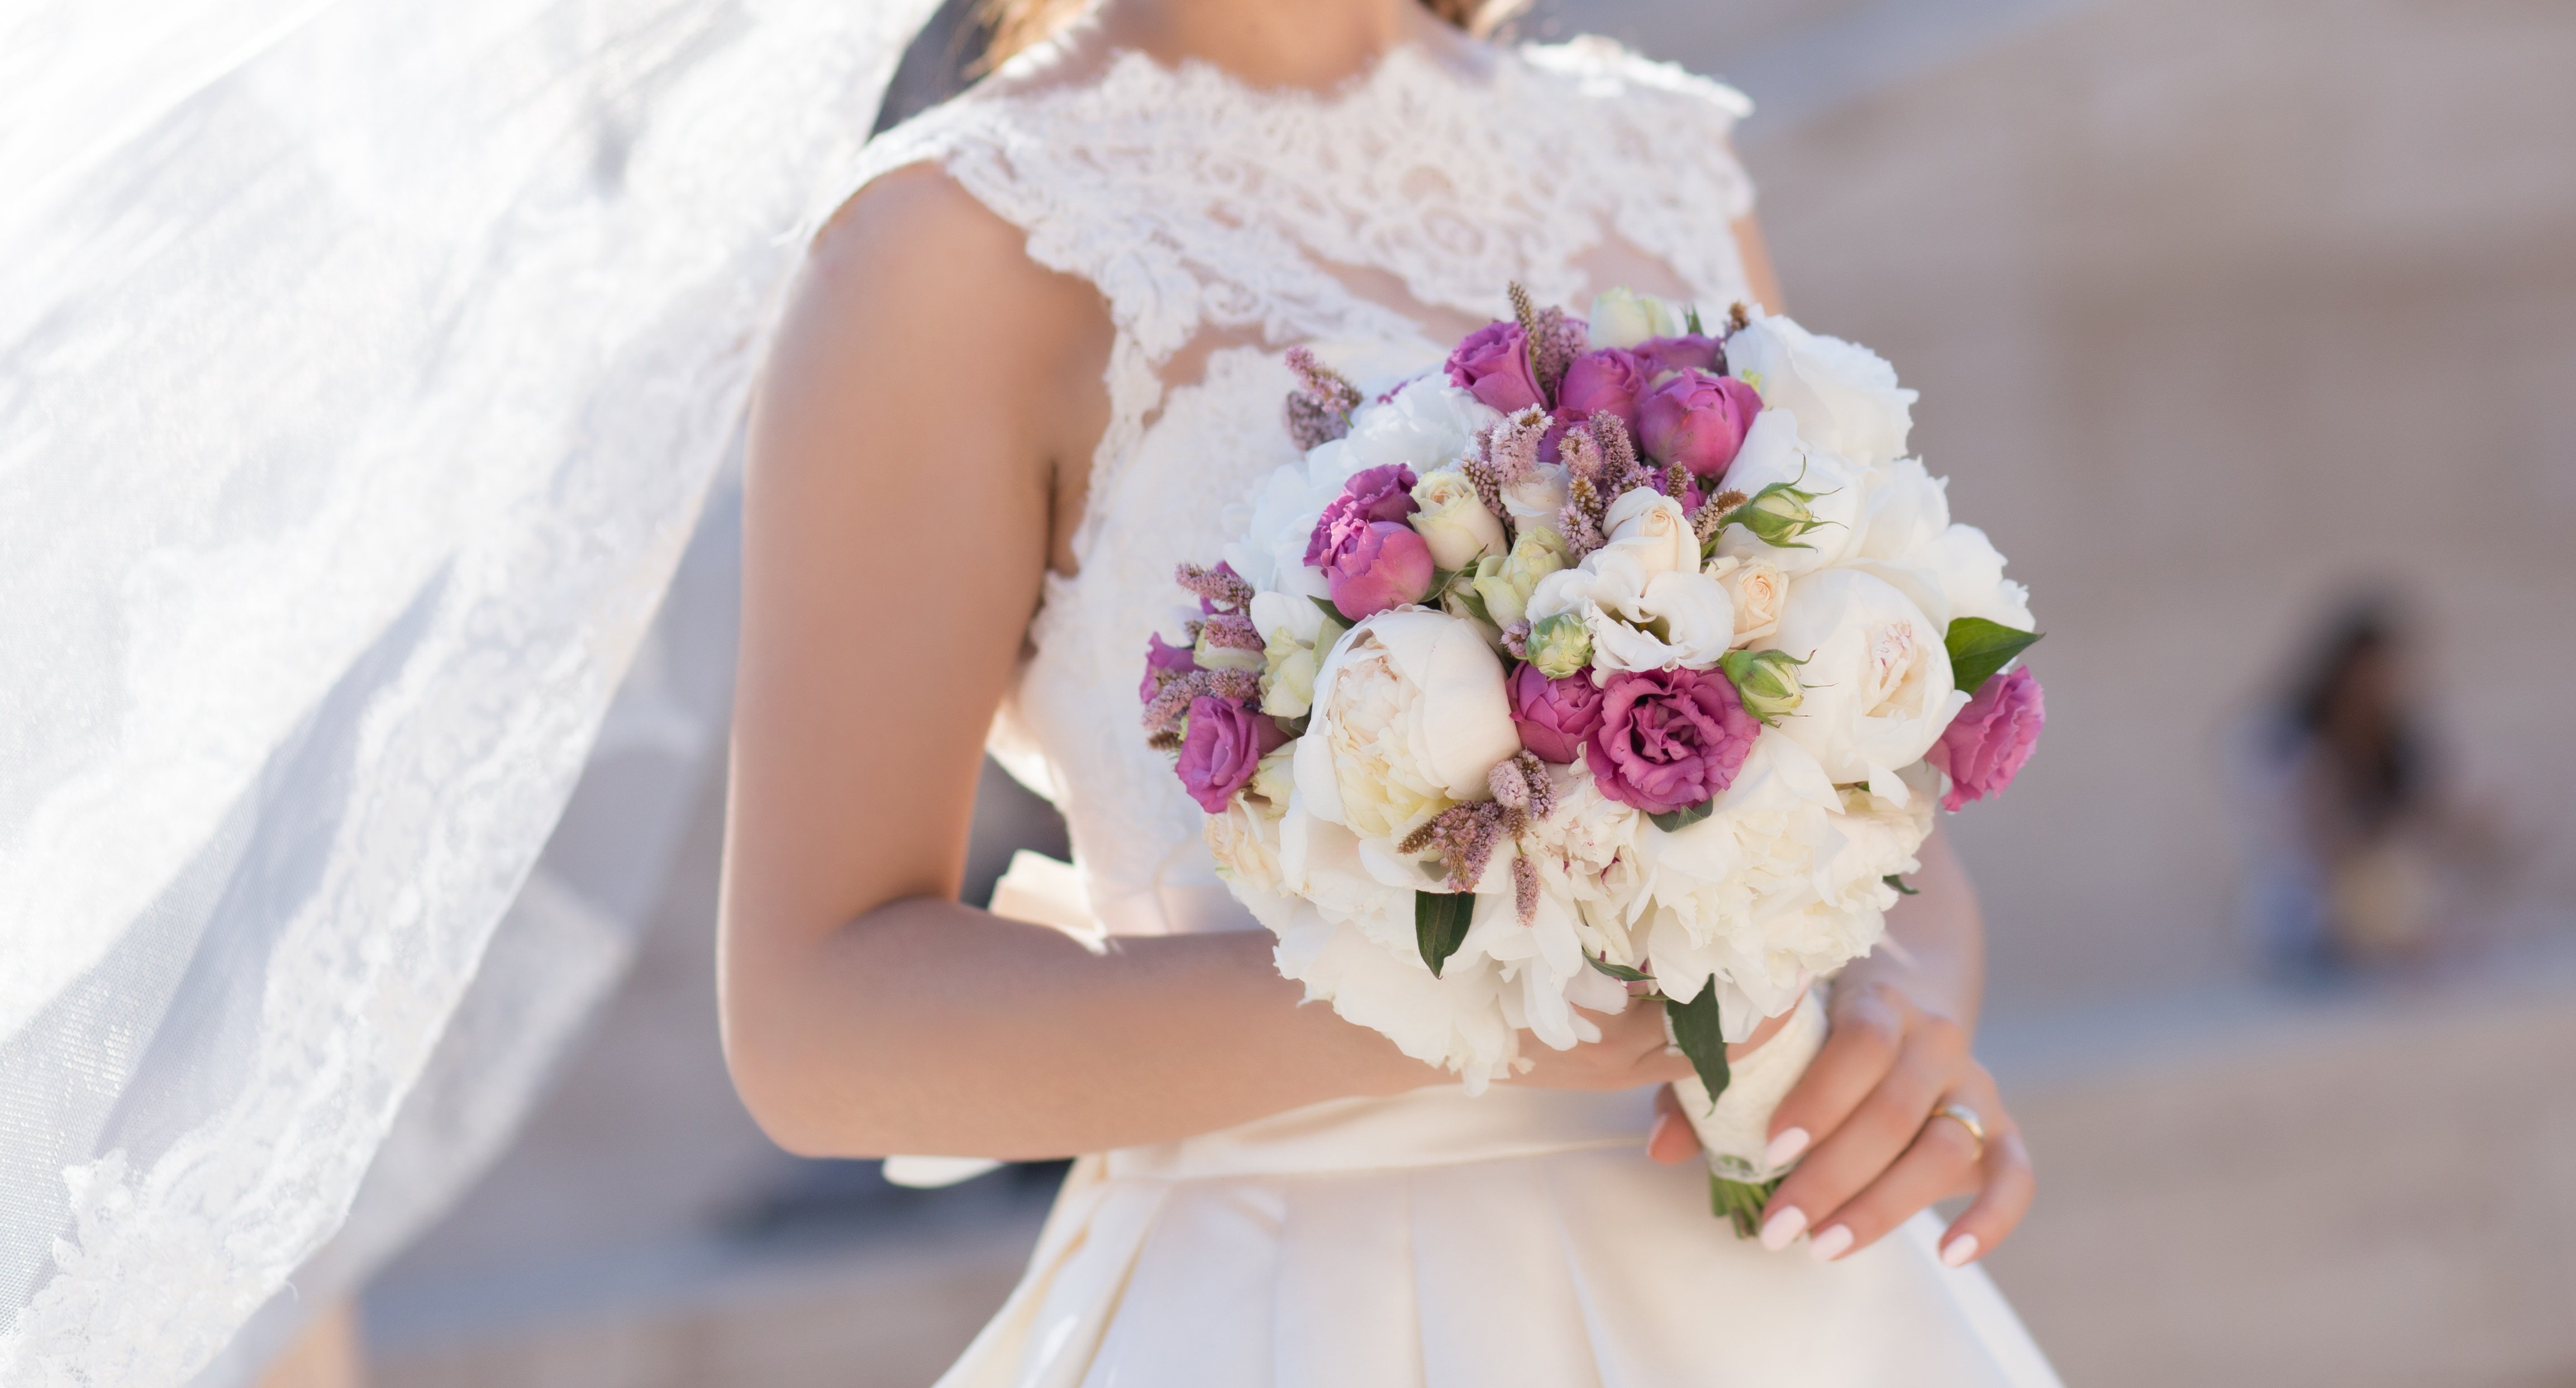 Braut mit Hochzeitsblumenstrauß | Quelle: Shutterstock